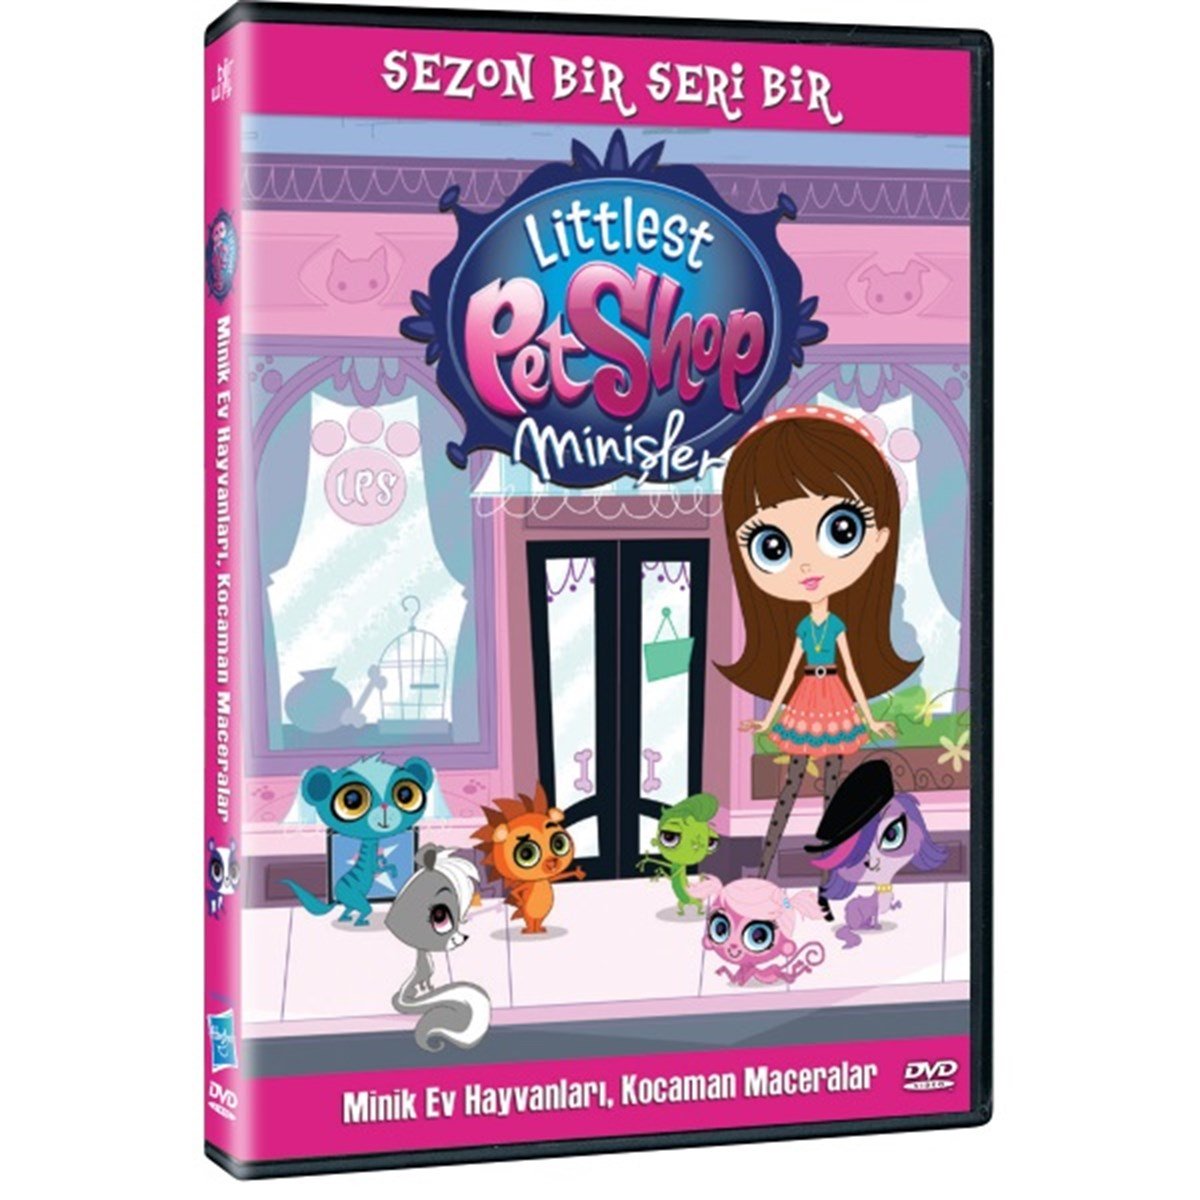 Littlest Pet Shop - Minişler - Sezon 1 Seri 1